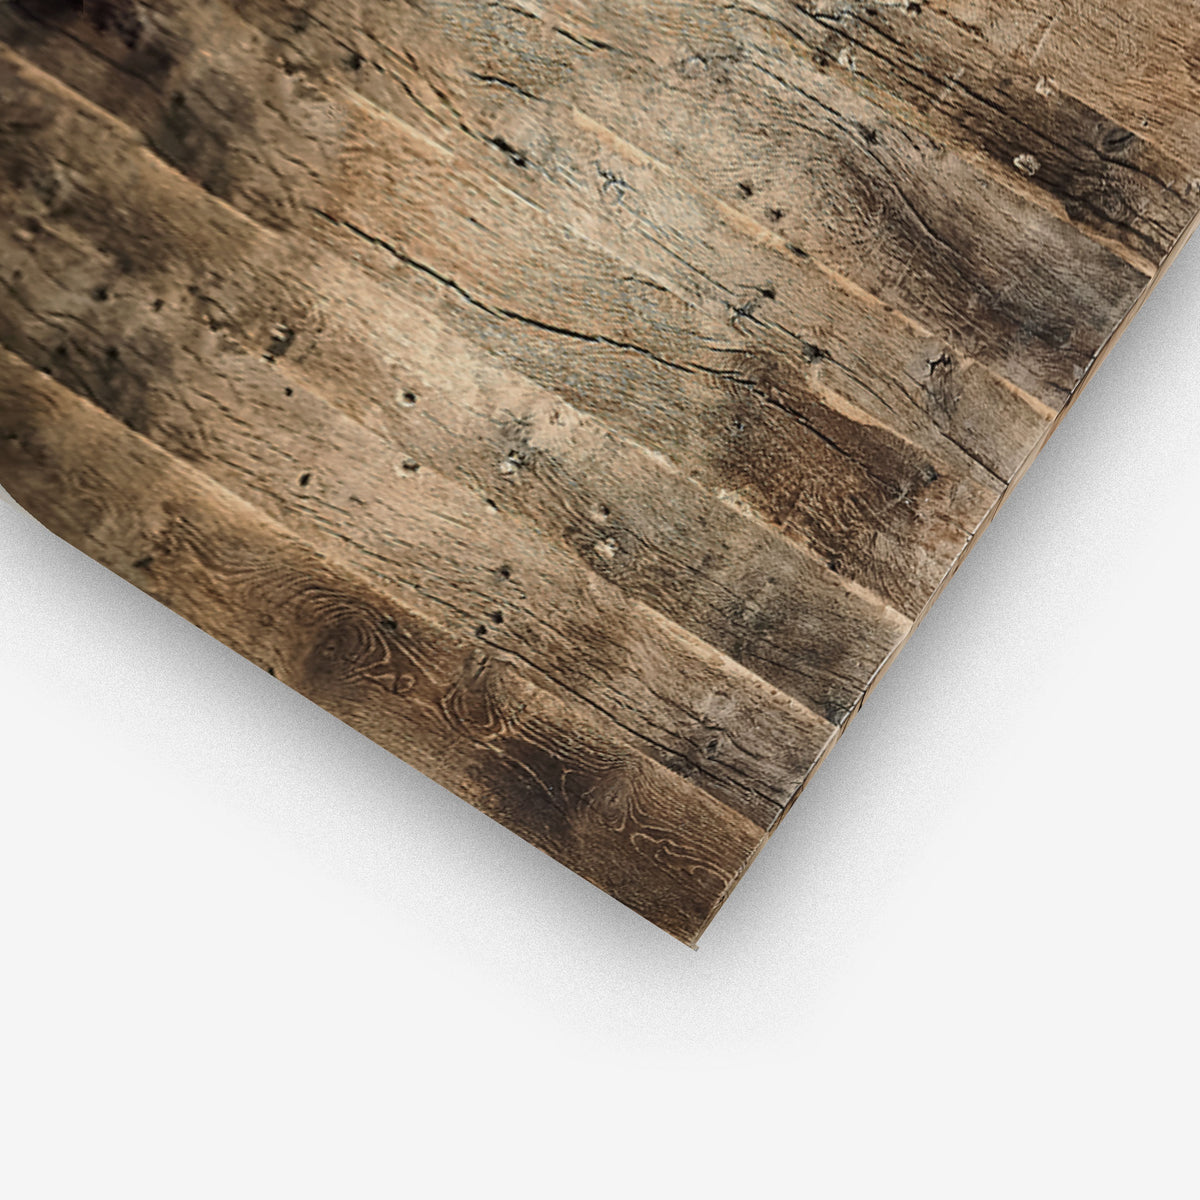 Tischplatte aus Altholz Eiche mit originaler gebürsteter Oberfläche und historischen Spuren